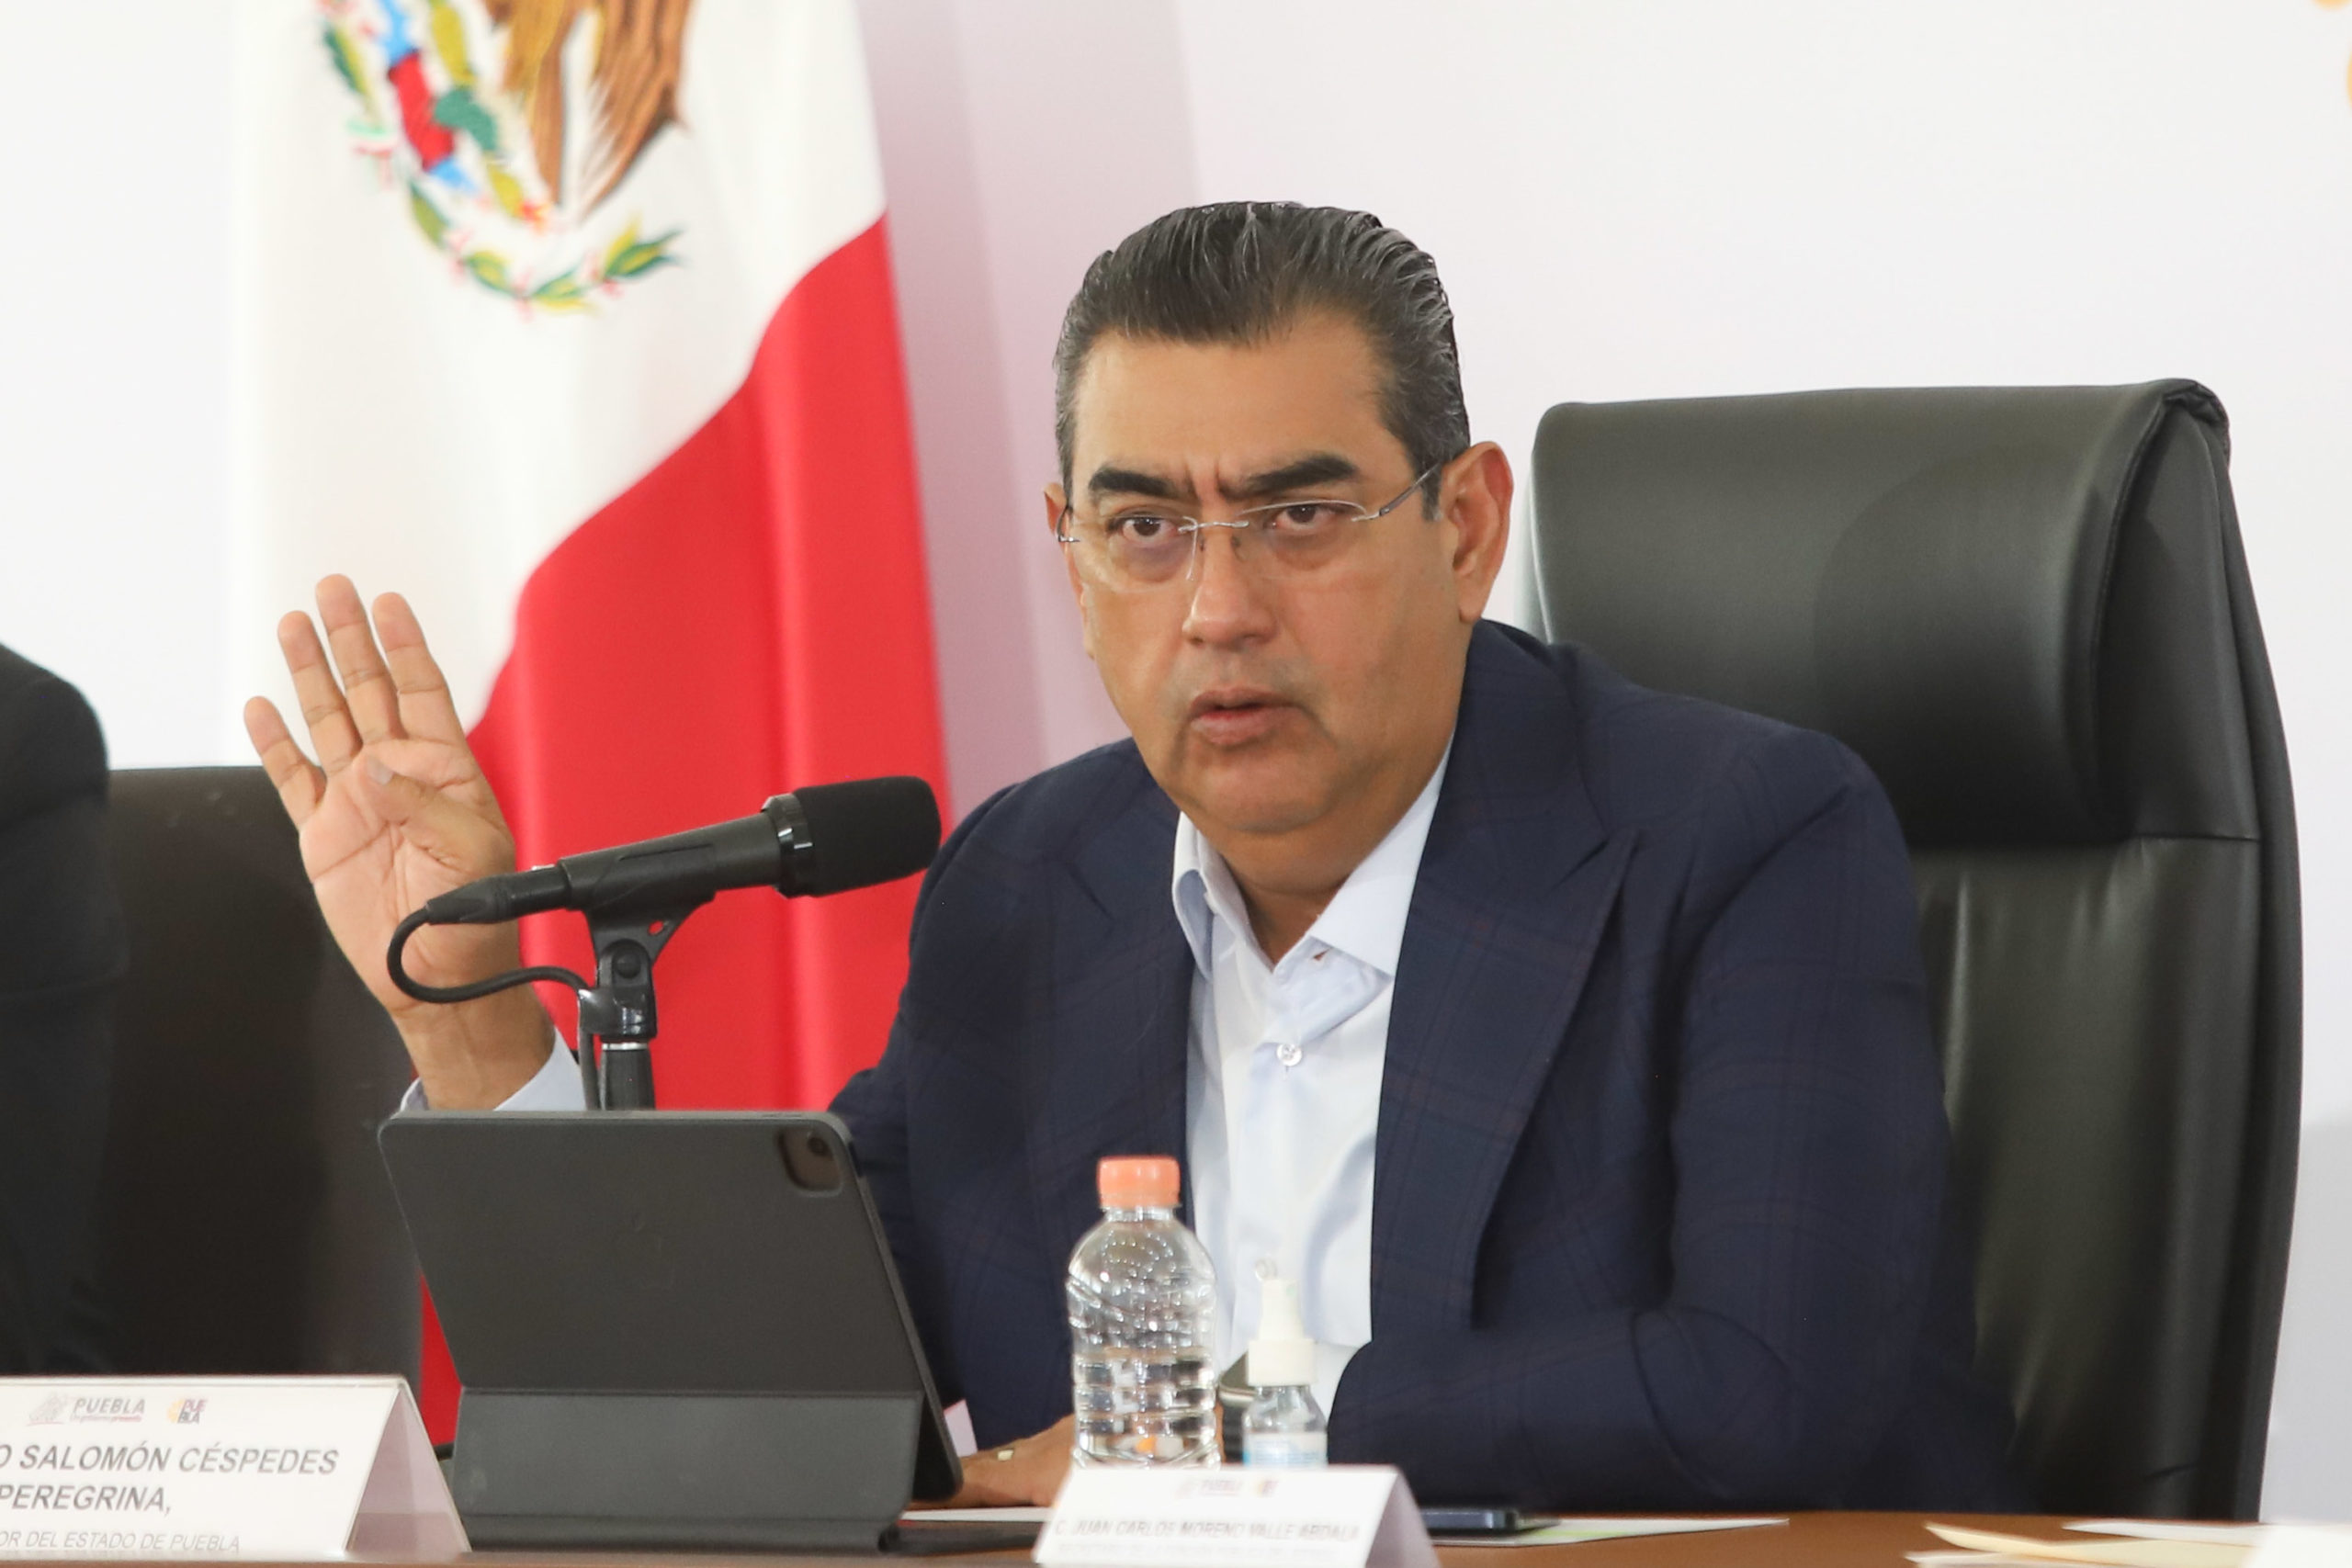 El gobernador Sergio Salomón sostiene que el ni ha movido “ni un dedo” para la designación de candidatos